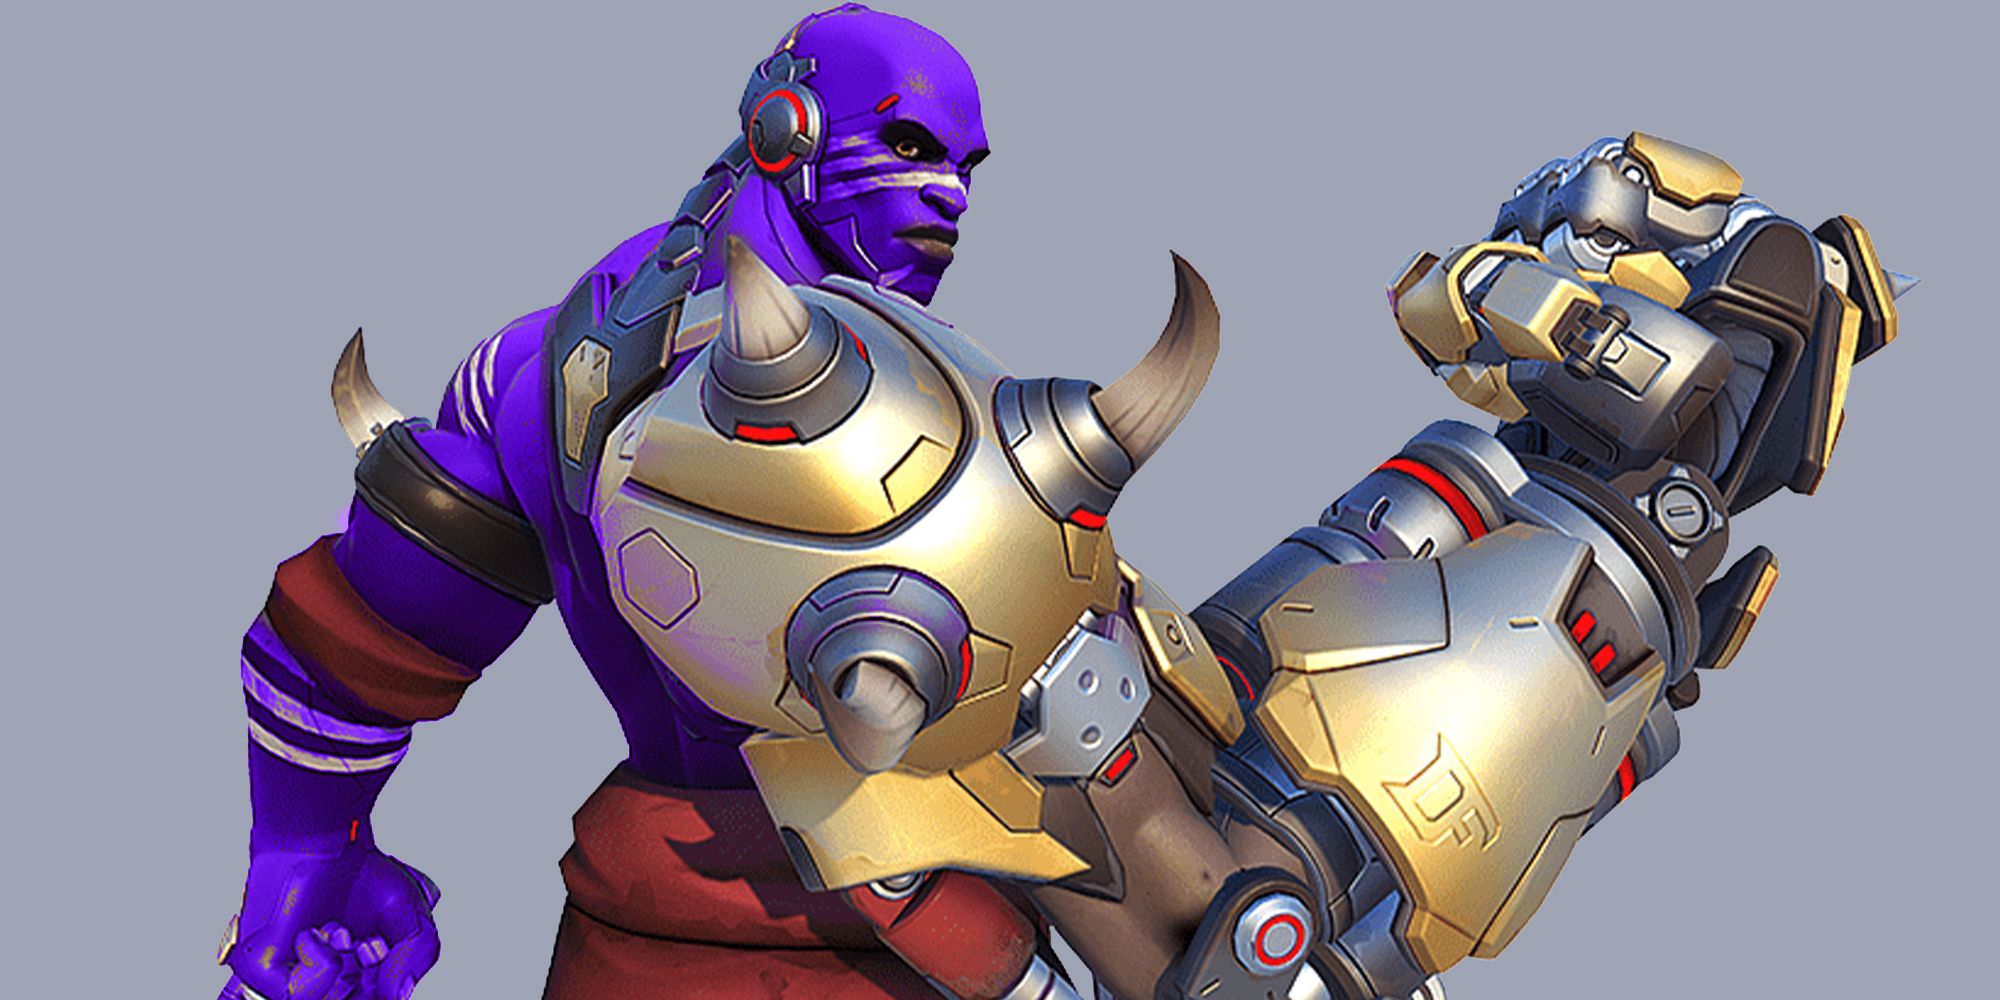 Doomfist showing off his gauntlet but he's purple